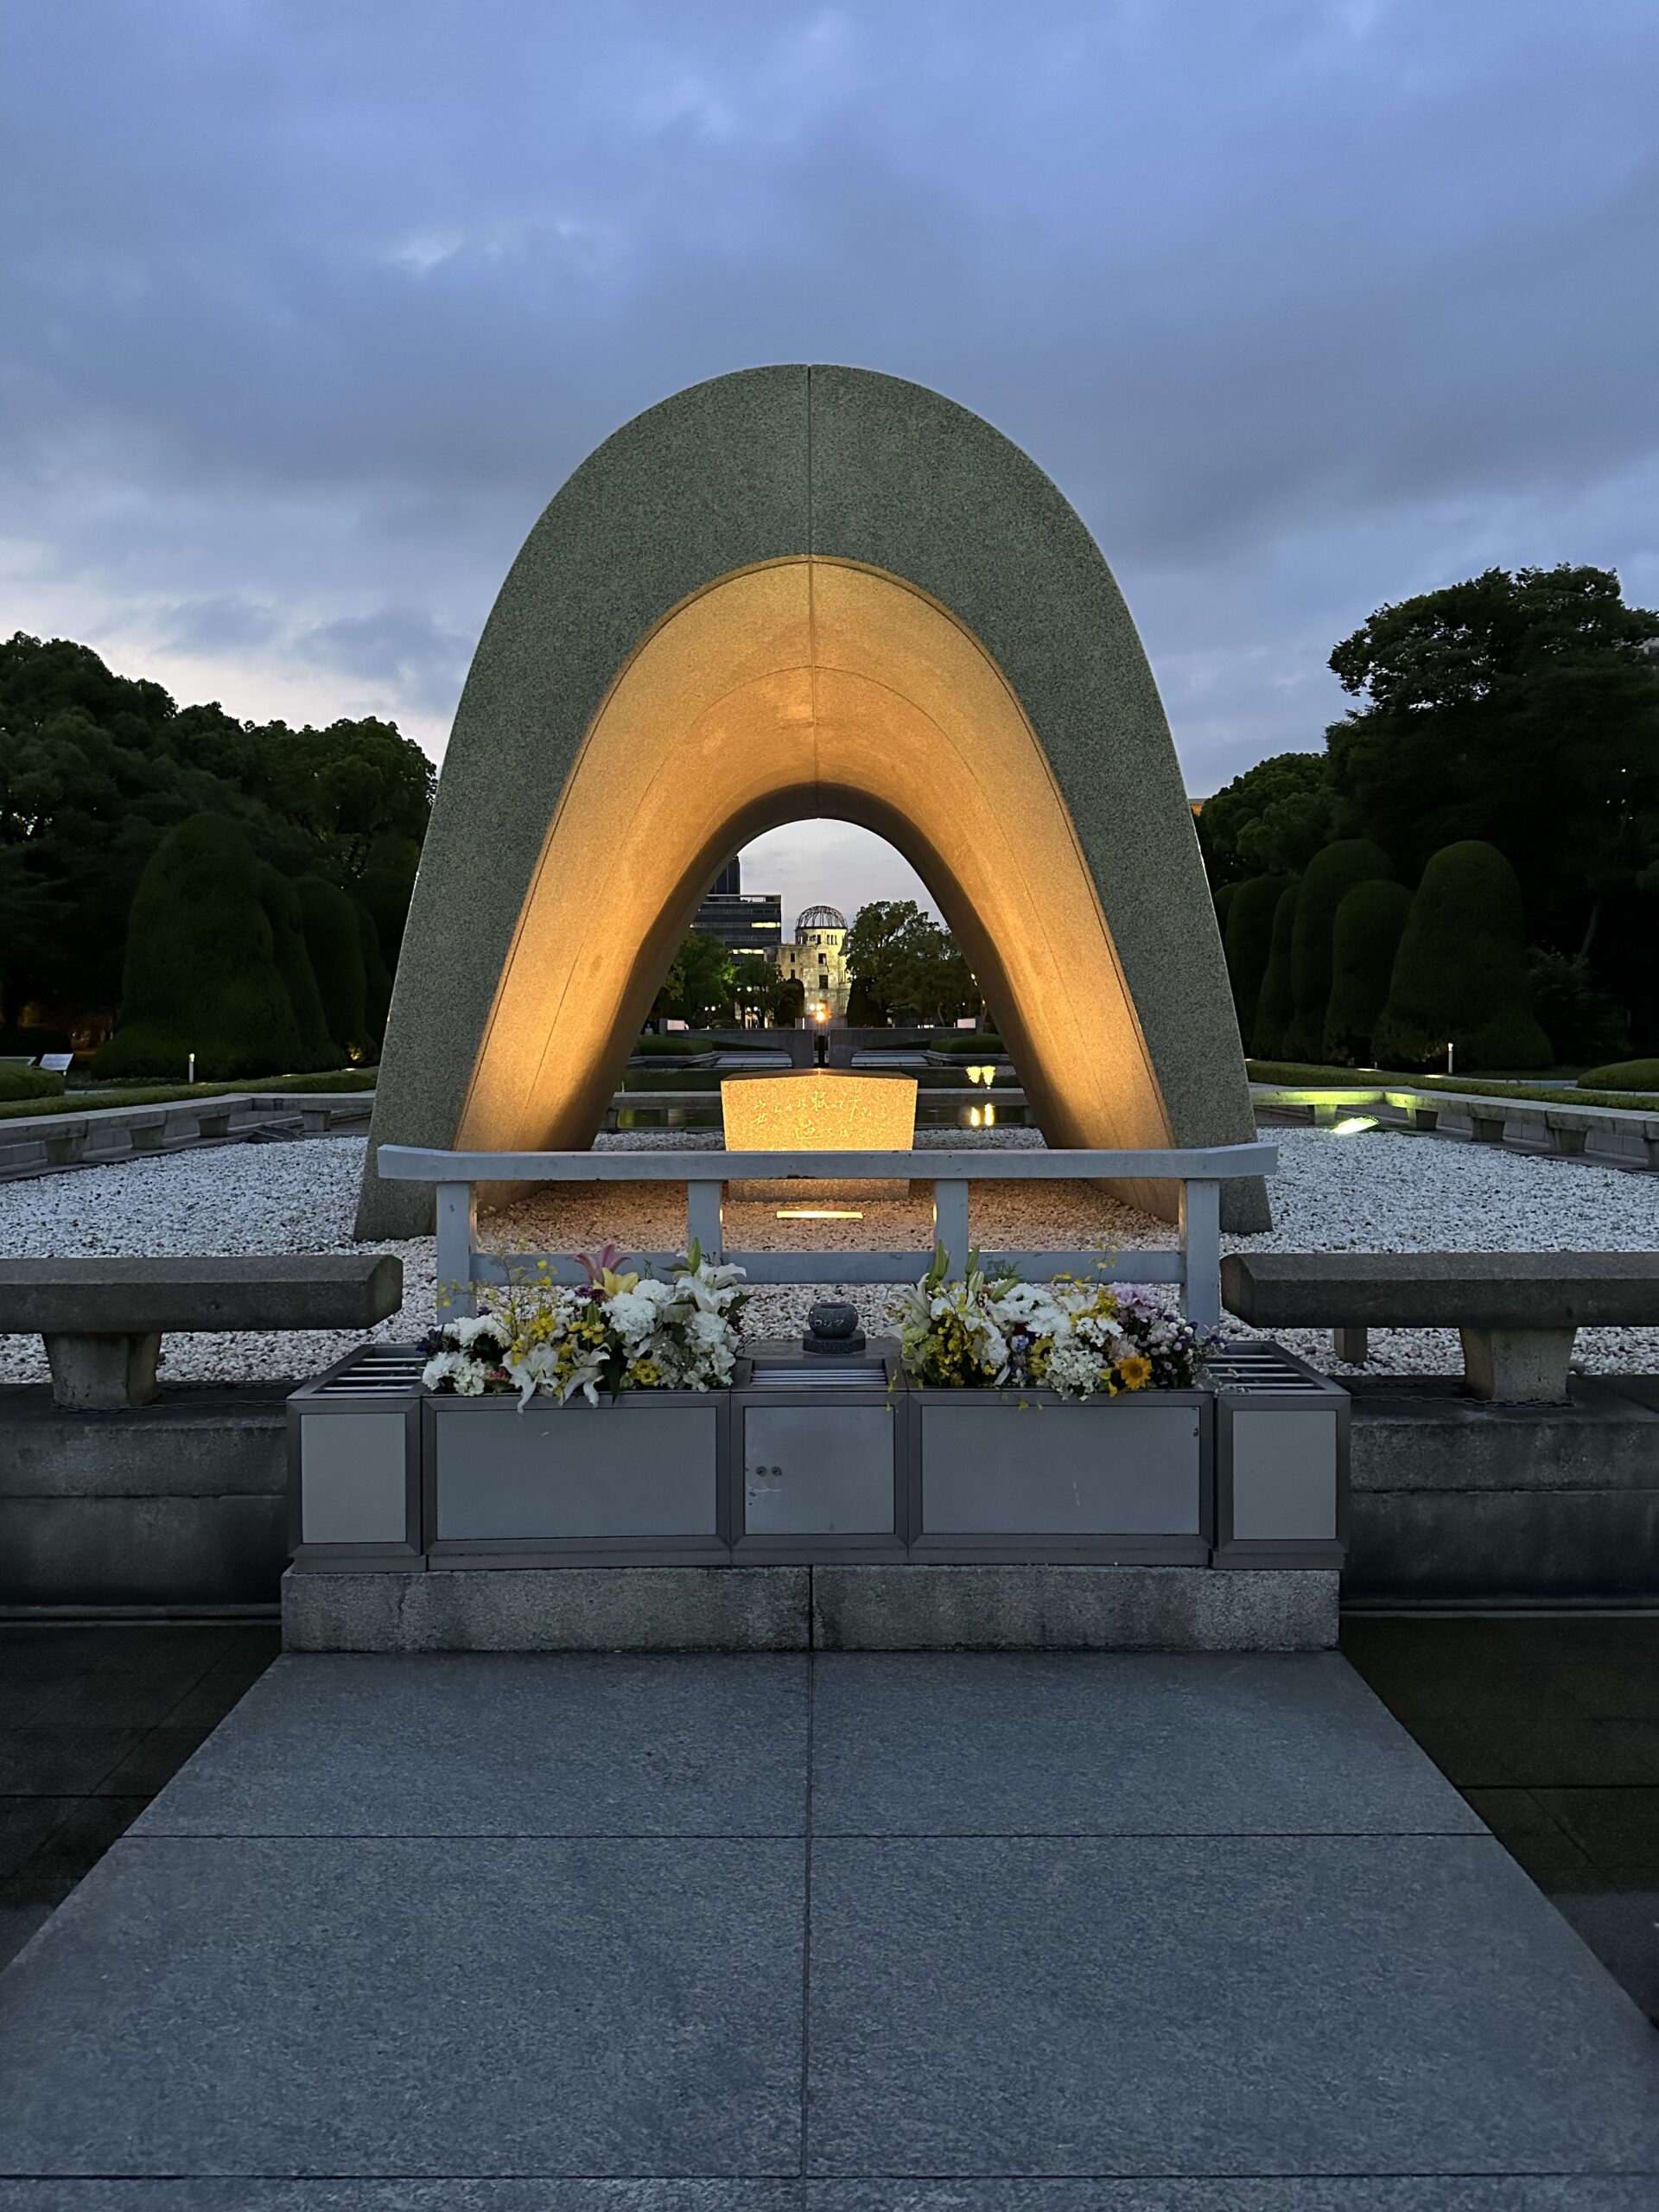 Hiroshima Peace Memorial Park at night.